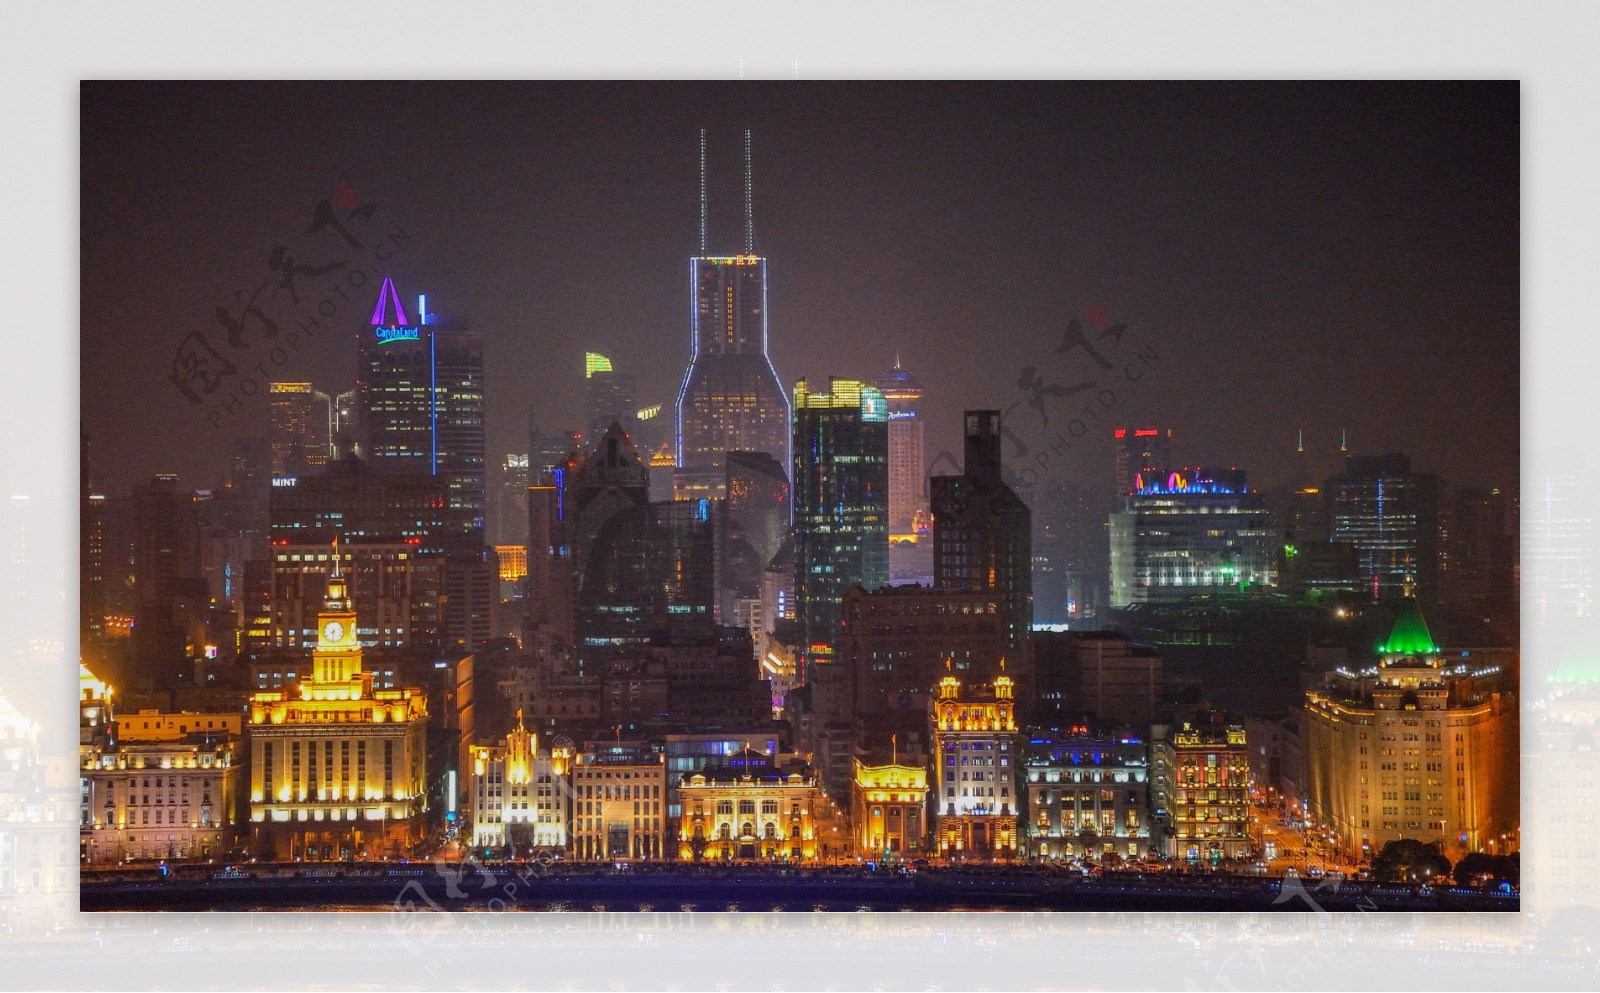 上海浦西夜景